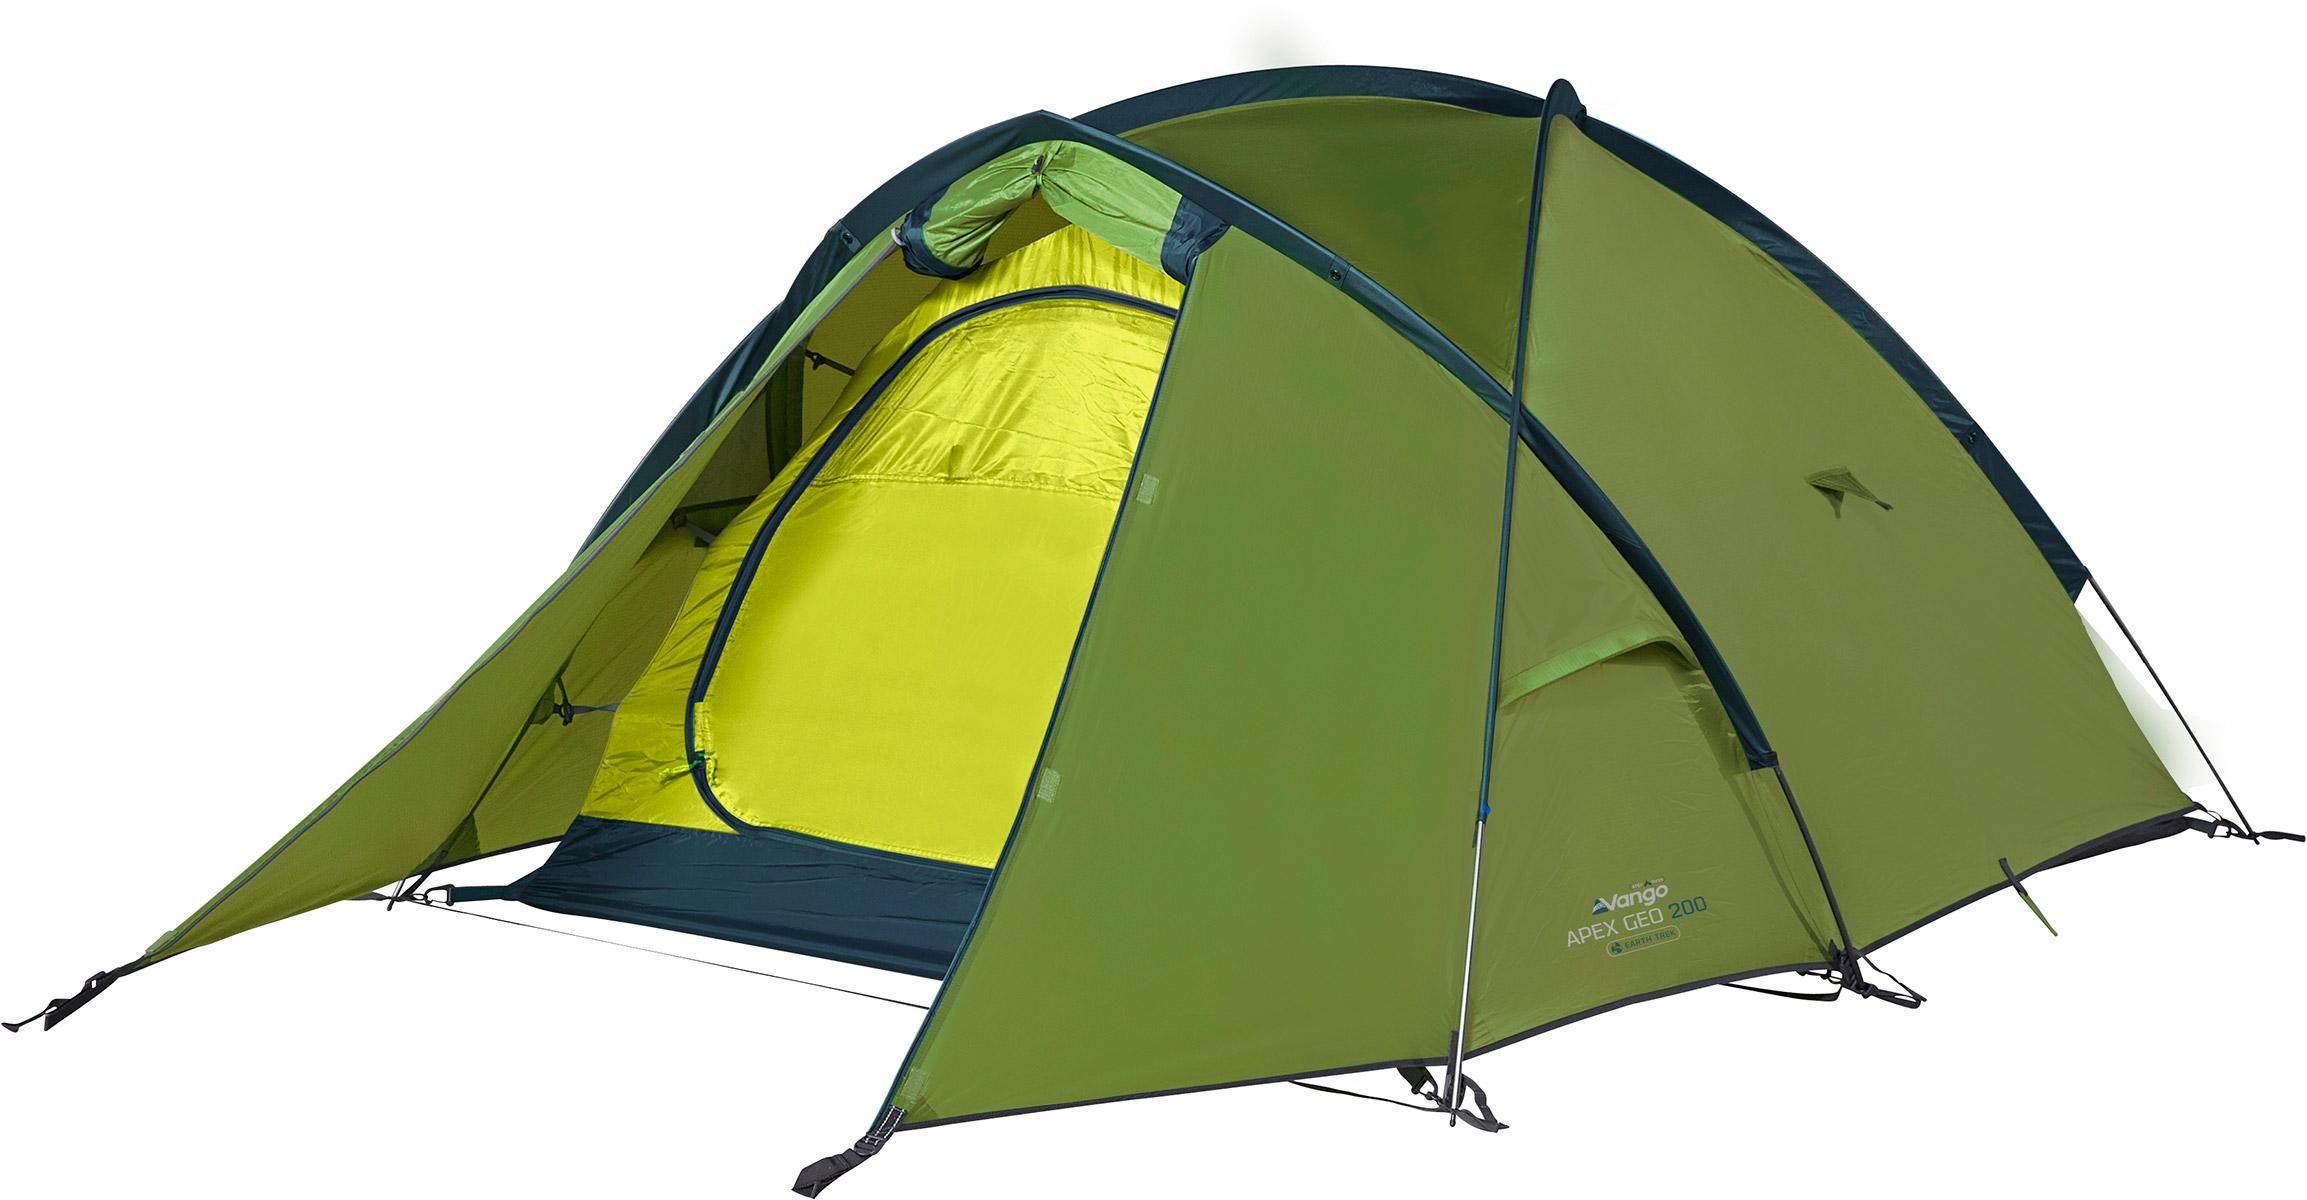 Vango Apex Geo 200 Tent - Pamir Green